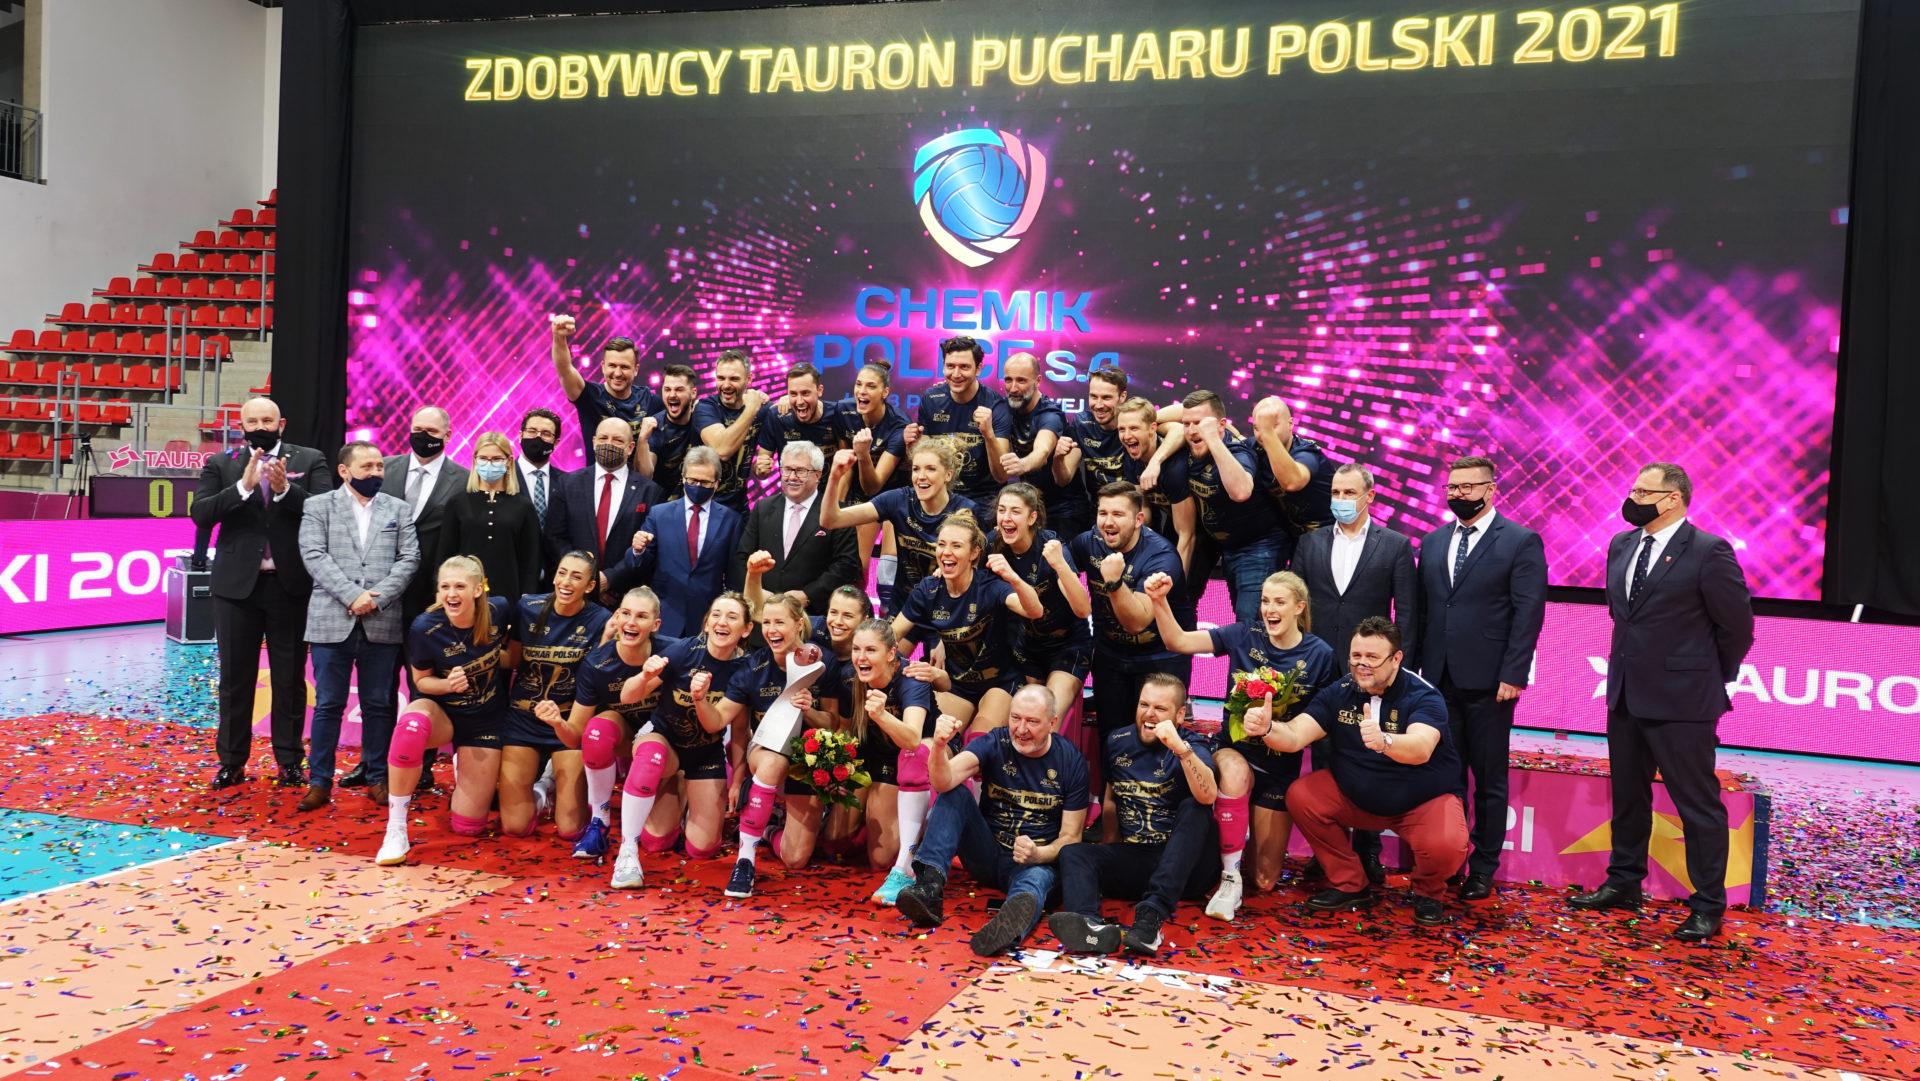 Pomagajcych Polaków zaprosimy na turniej finaBowy TAURON Pucharu Polski w Nysie